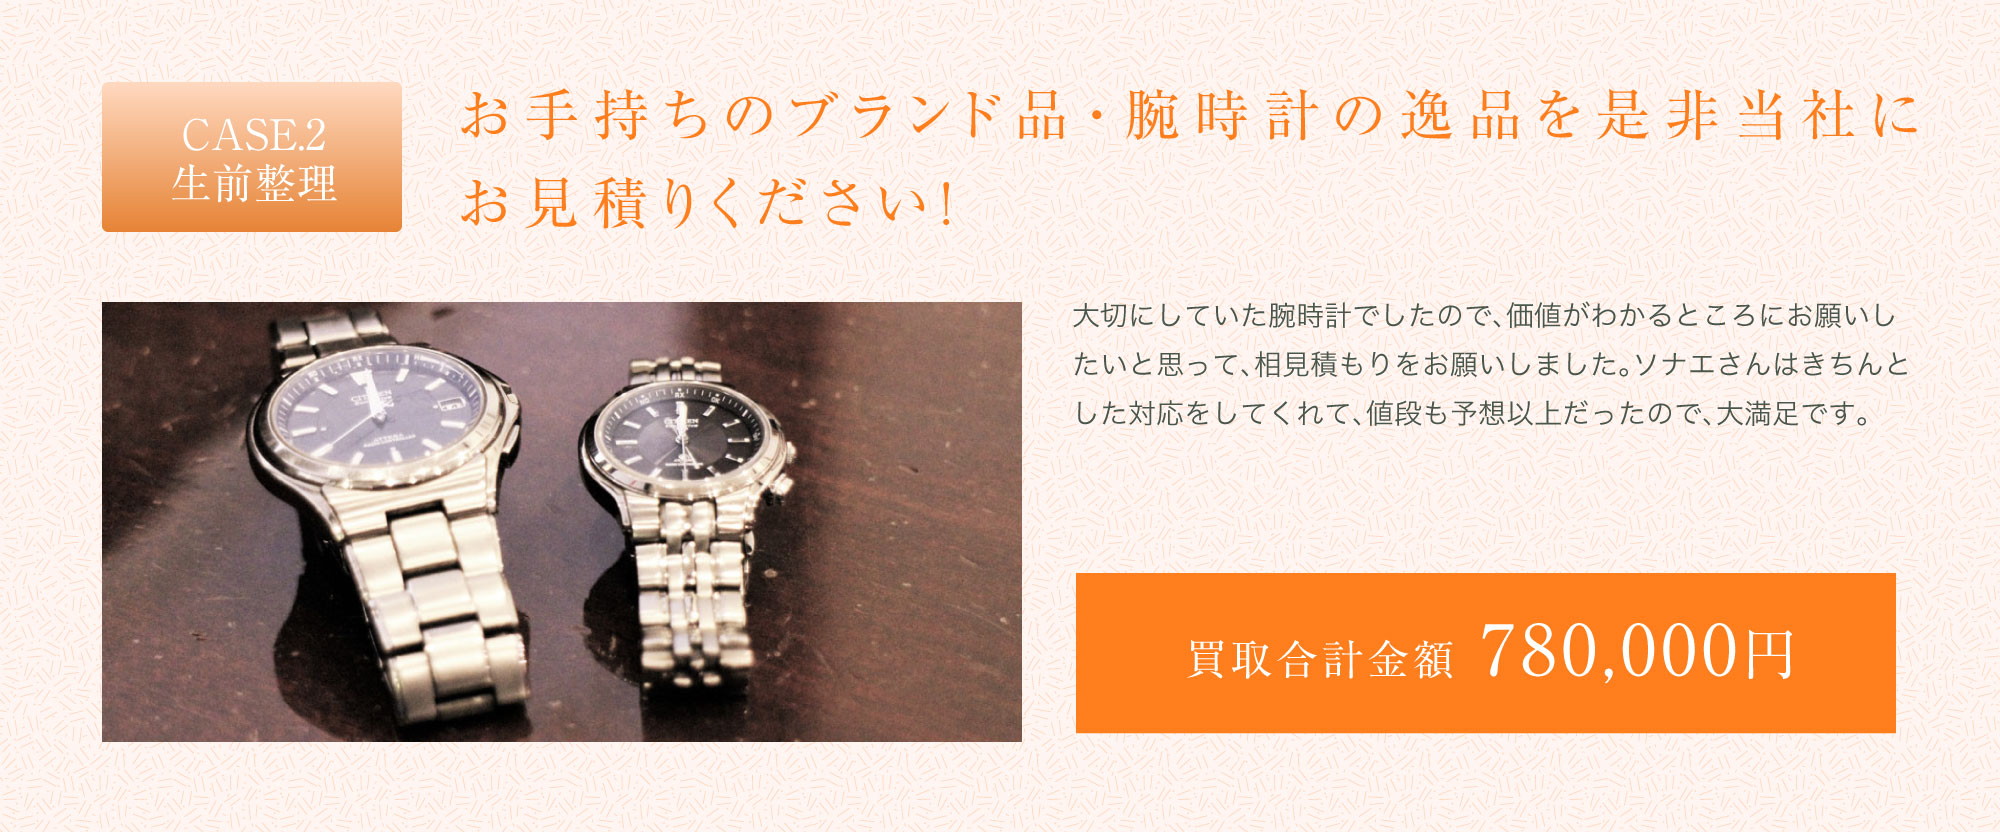 お手持ちのブランド品・腕時計の逸品を是非当社にお見積りください！